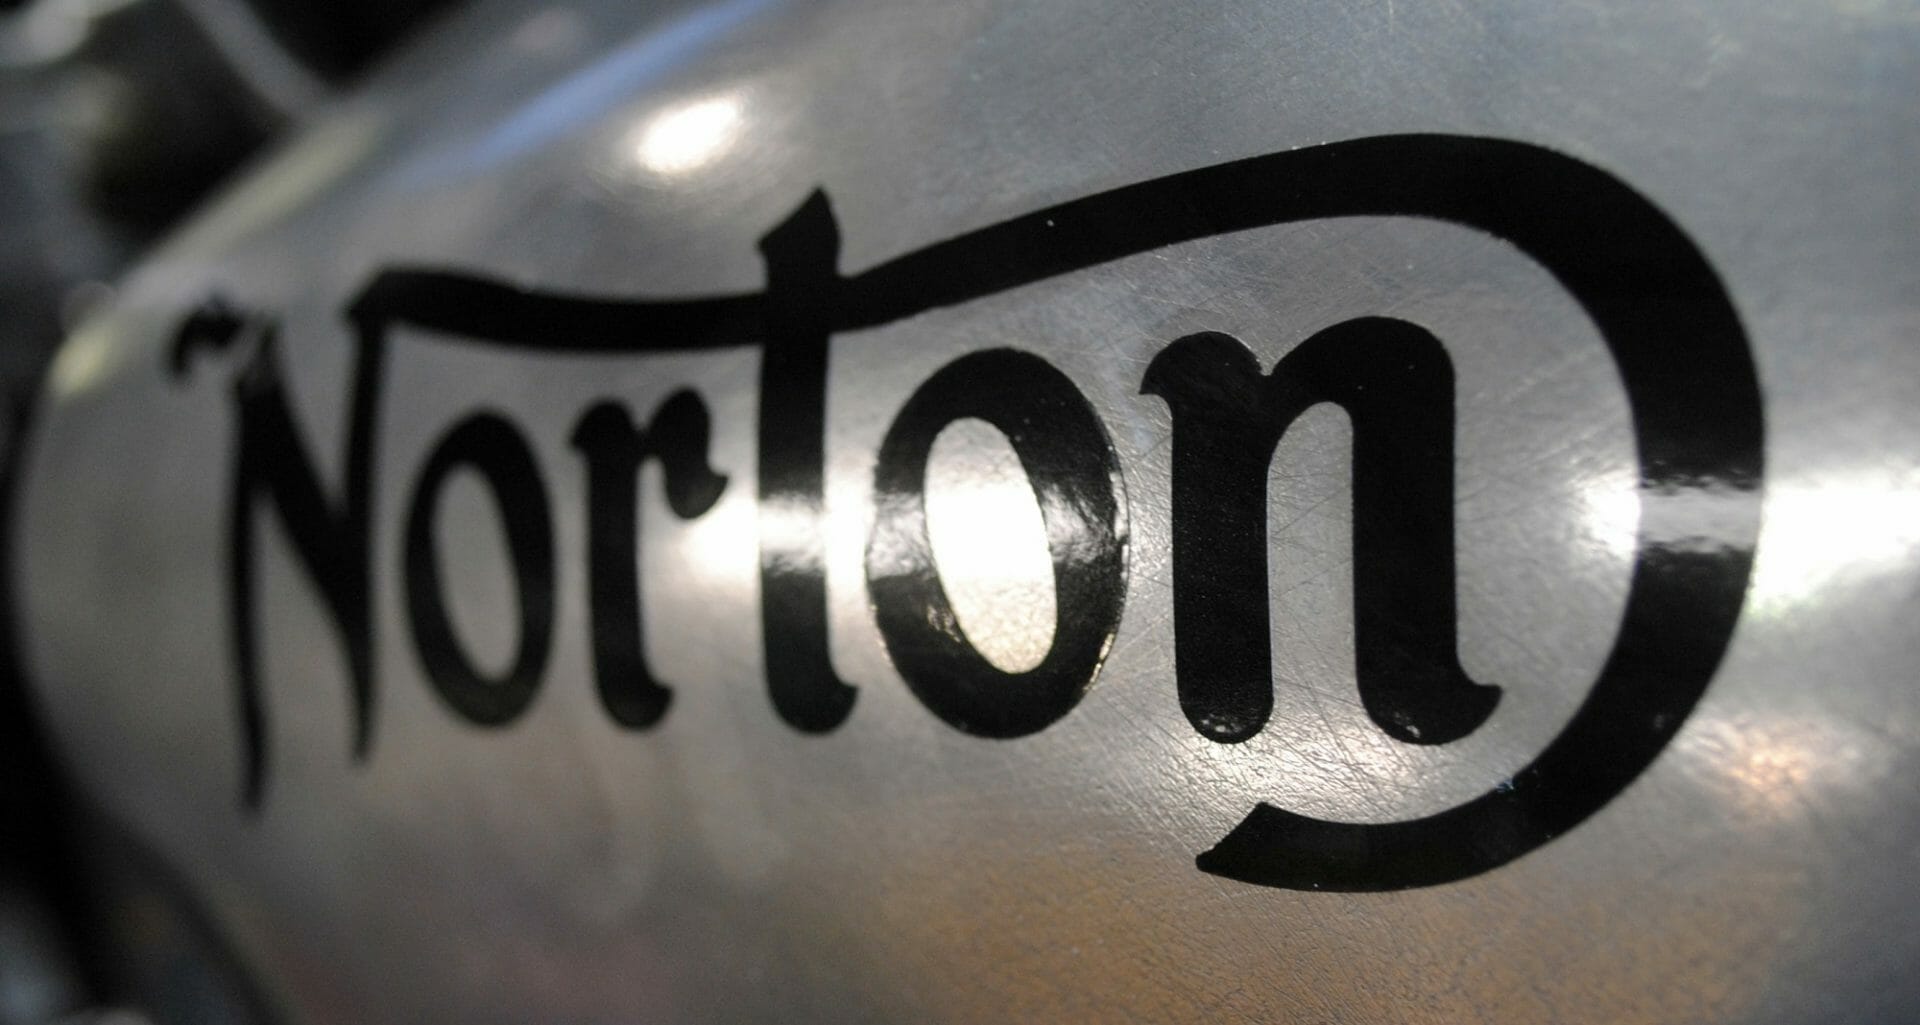 Neuer CEO bei Norton
- auch in der MOTORRAD NACHRICHTEN APP